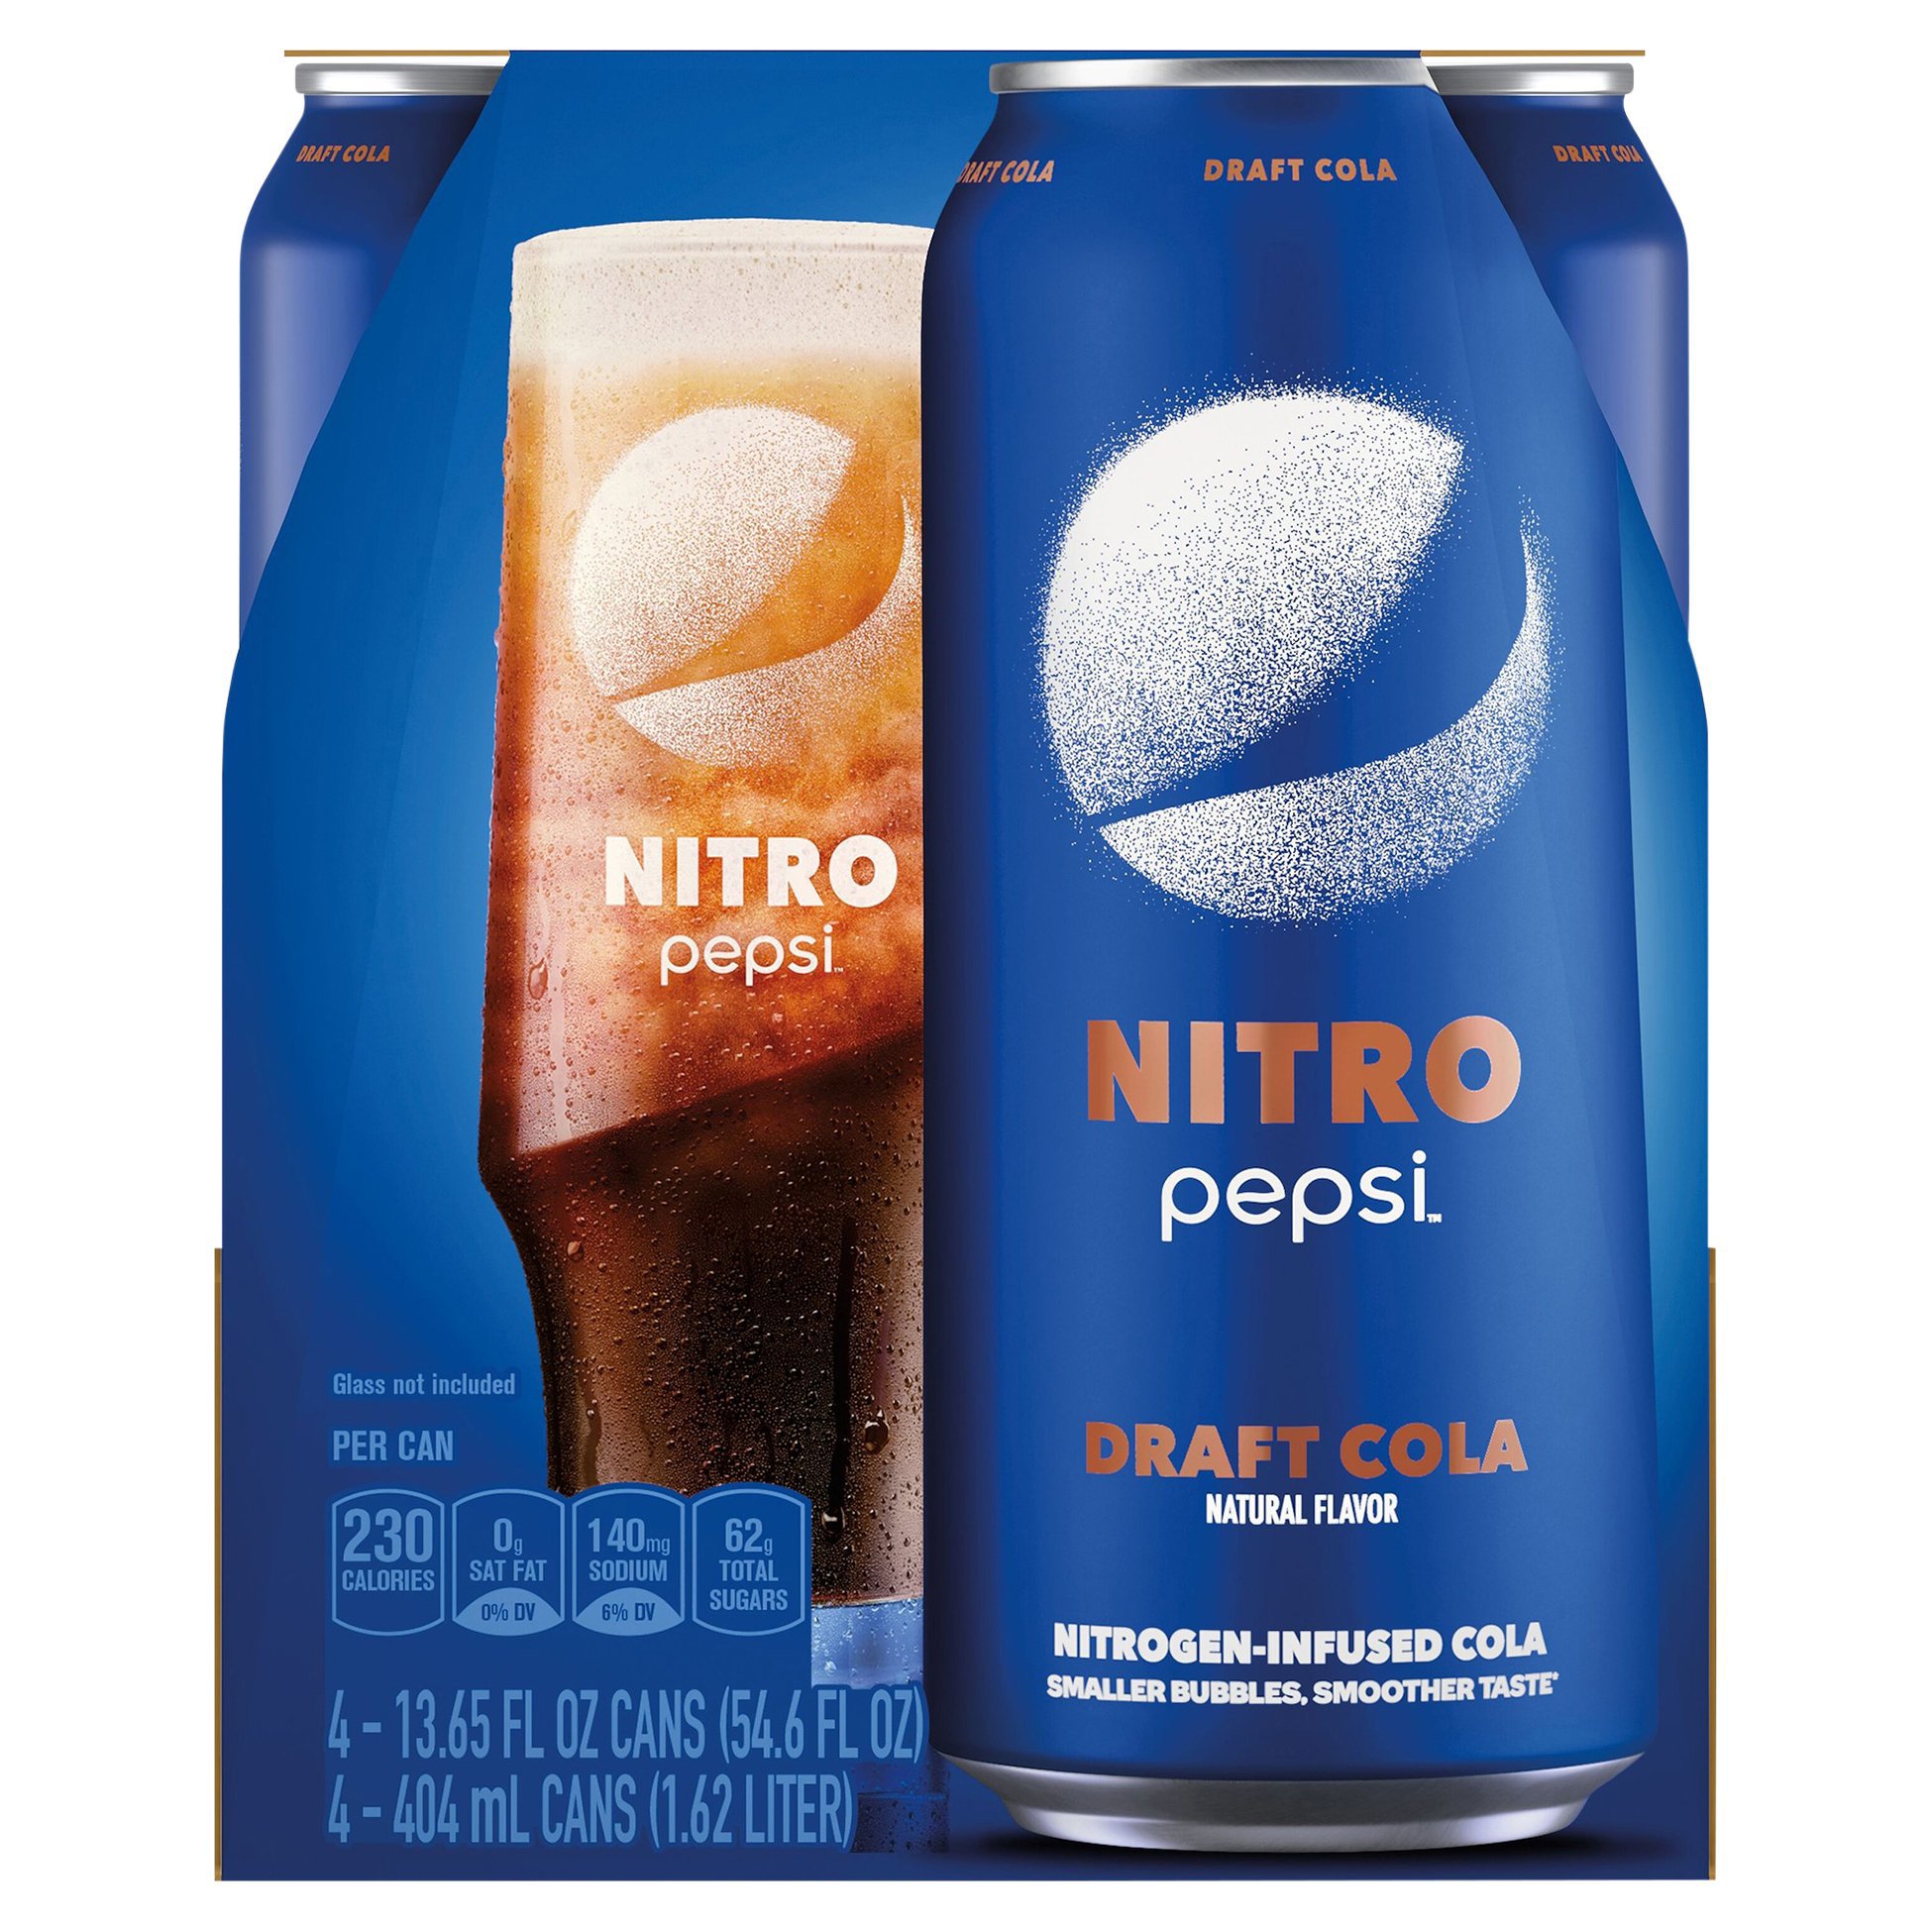 Pepsi Nitro Draft Cola 13.65 oz Cans - Shop Soda at H-E-B